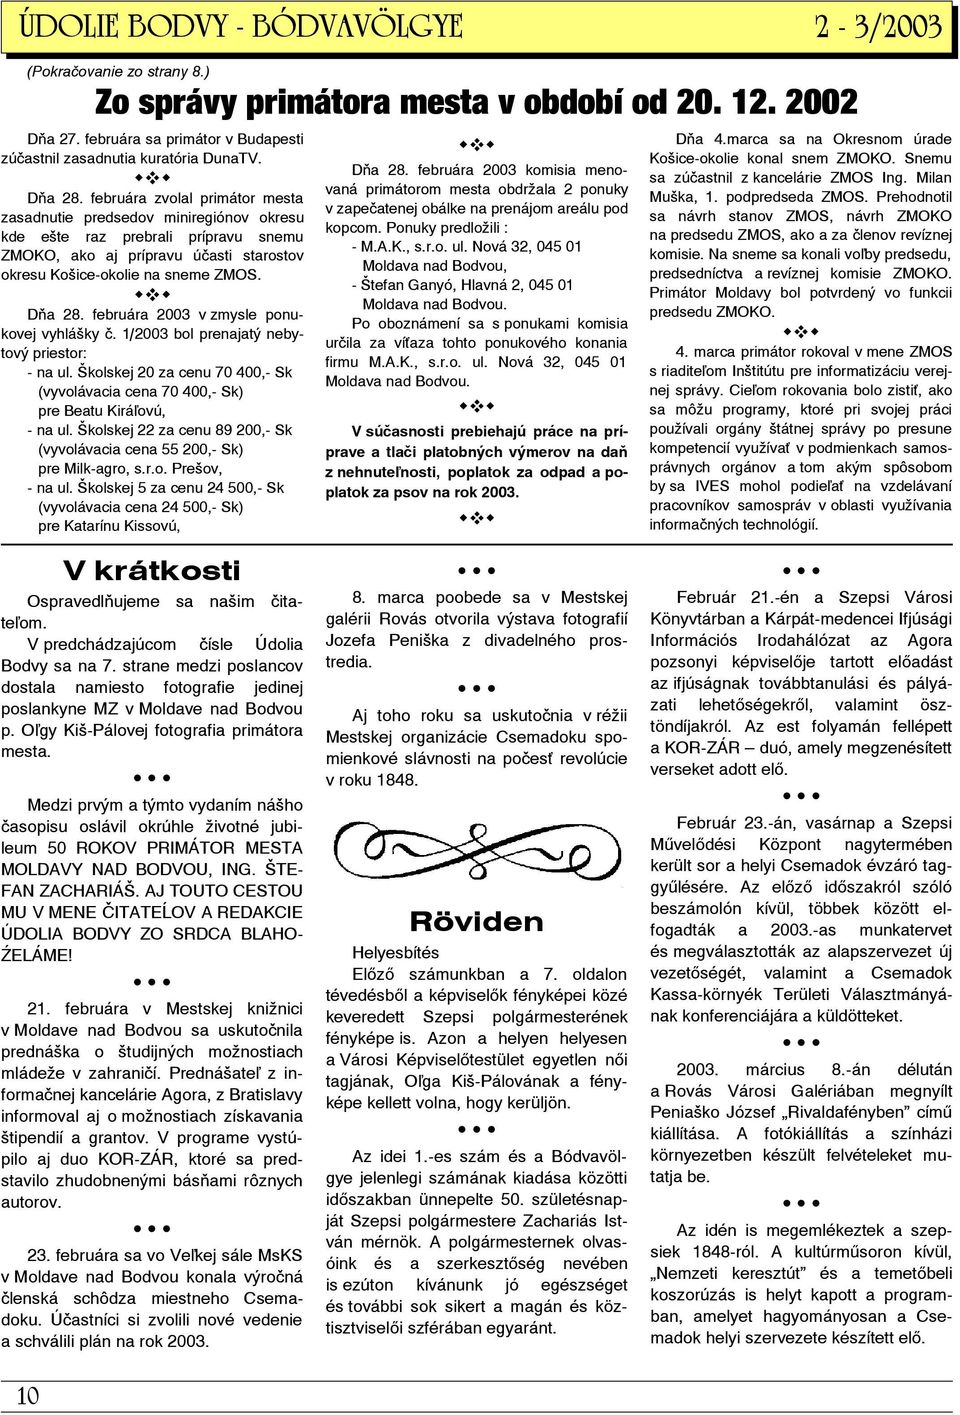 februára 2003 v zmysle ponukovej vyhlášky č. 1/2003 bol prenajatý nebytový priestor: - na ul. Školskej 20 za cenu 70 400,- Sk (vyvolávacia cena 70 400,- Sk) pre Beatu Kirá ovú, - na ul.